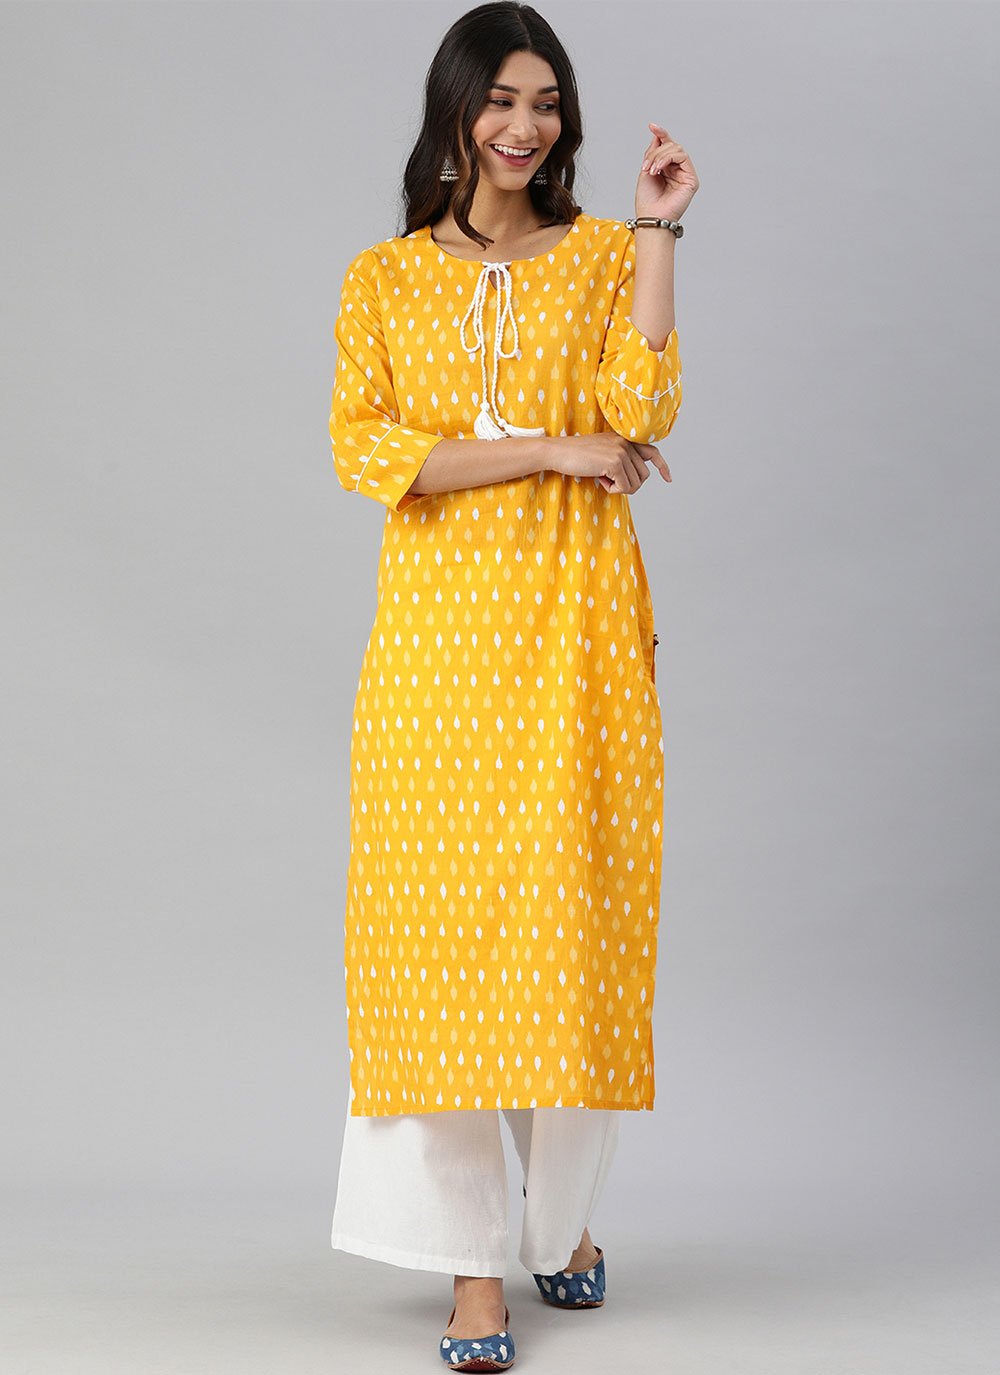 Jaipuri Print Yellow Cotton Kurtis Summer Kurtas For Ladies  ekantastudio